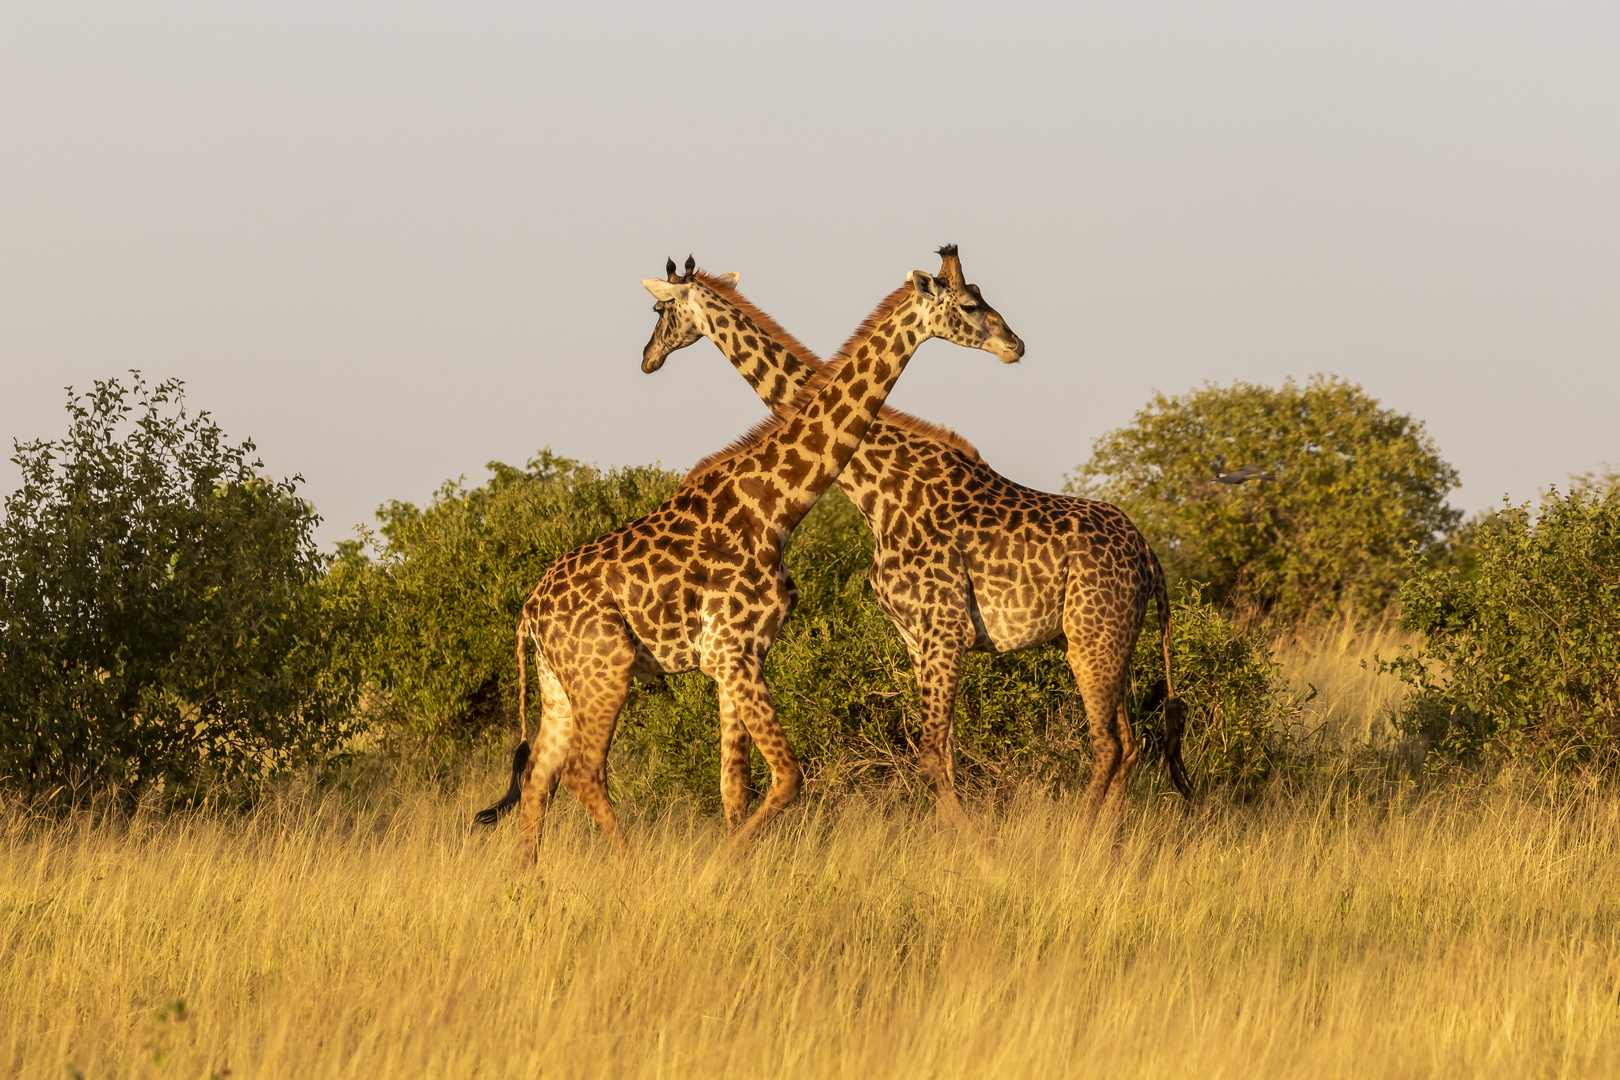 Masai-Giraffe